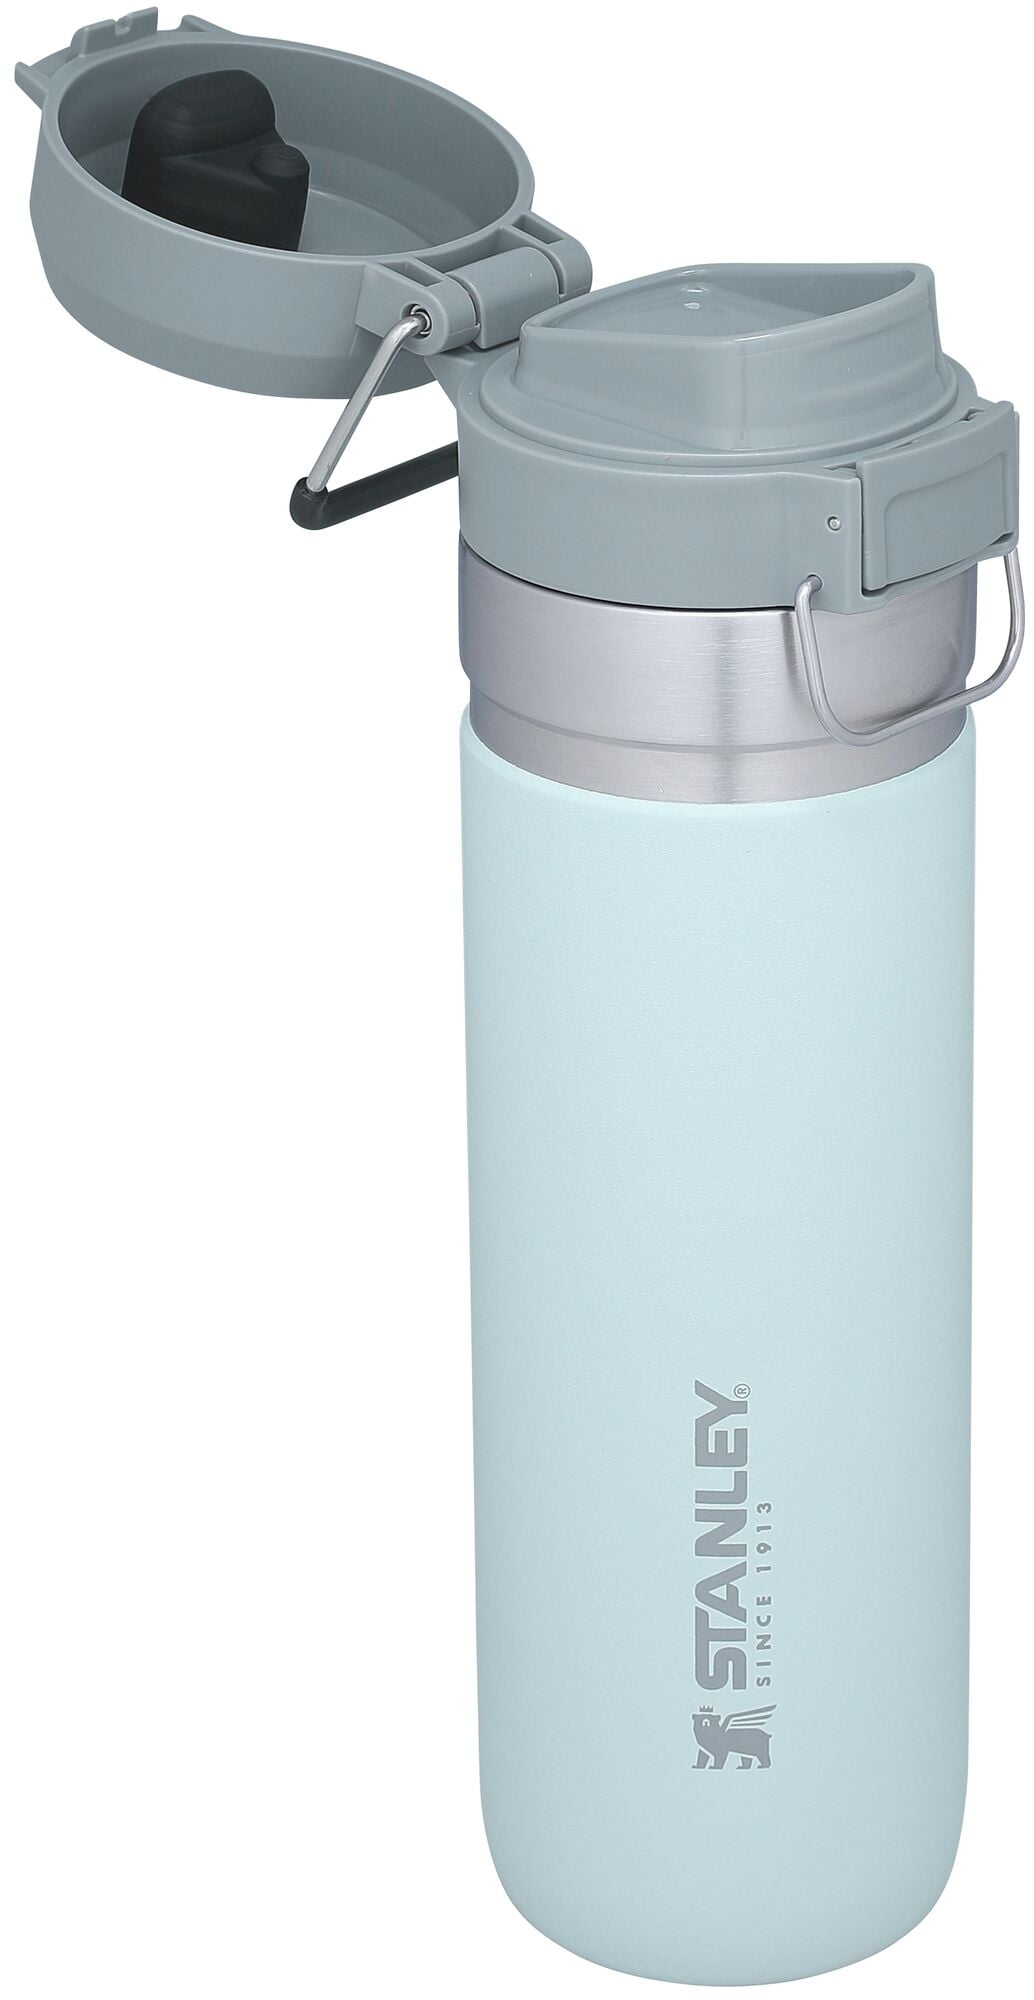  GO FLIP 700 ml polar white - vacuum bottle - STANLEY -  36.92 € - outdoorové oblečení a vybavení shop